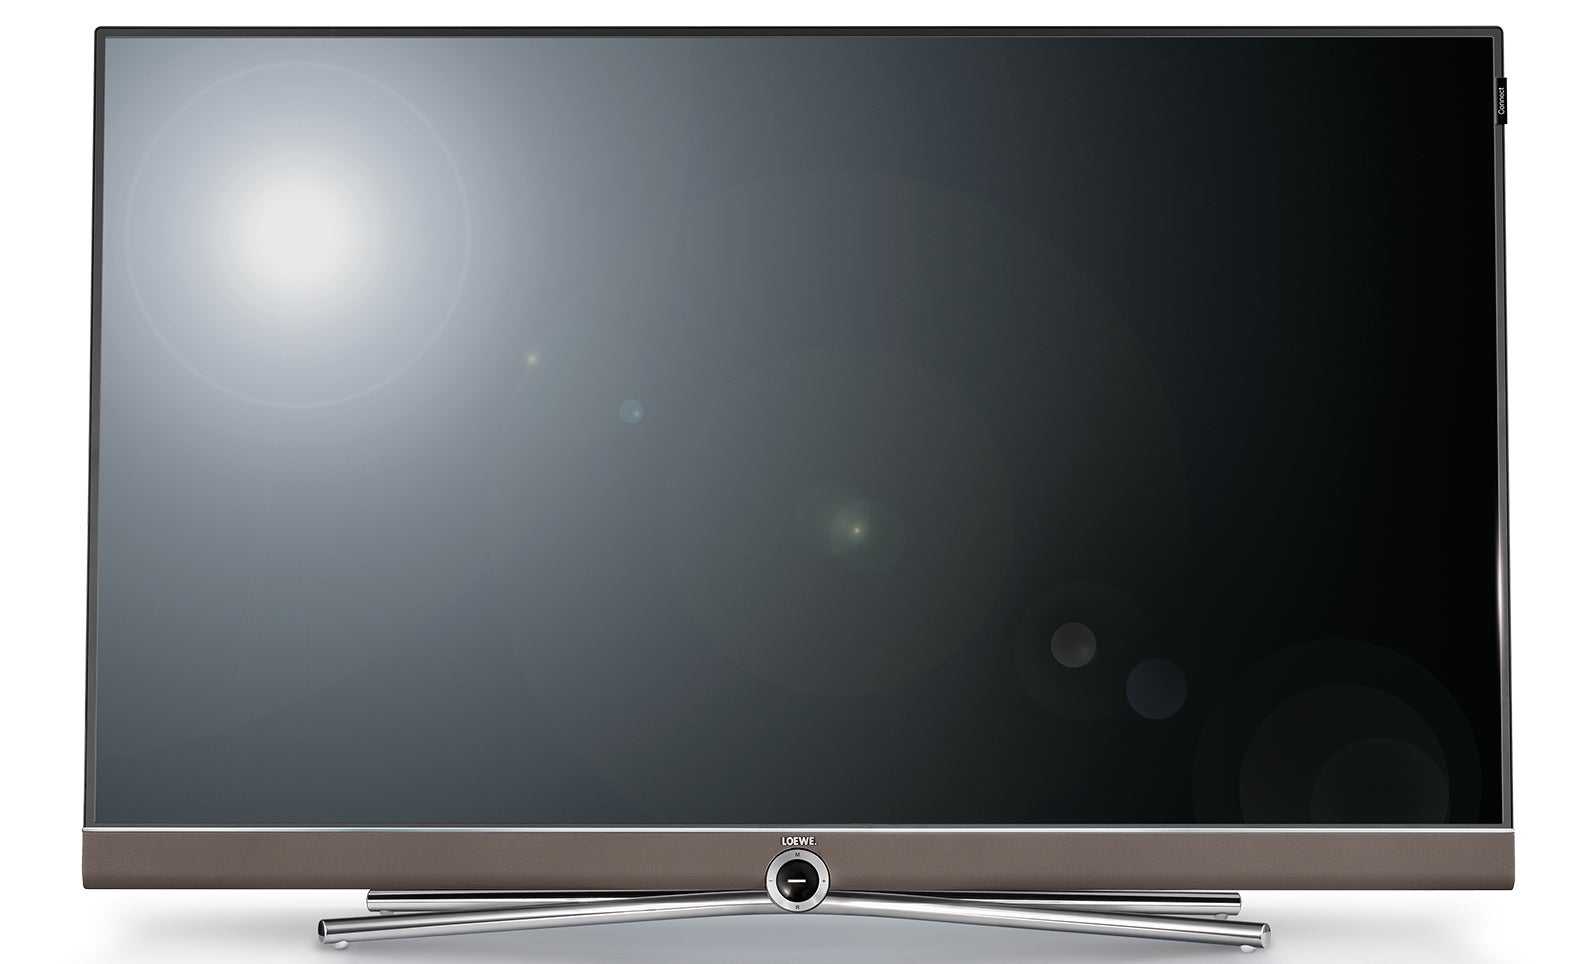 Телевизор лоеве art 40 3d купить недорого в москве, цена 2021, отзывы г. москва